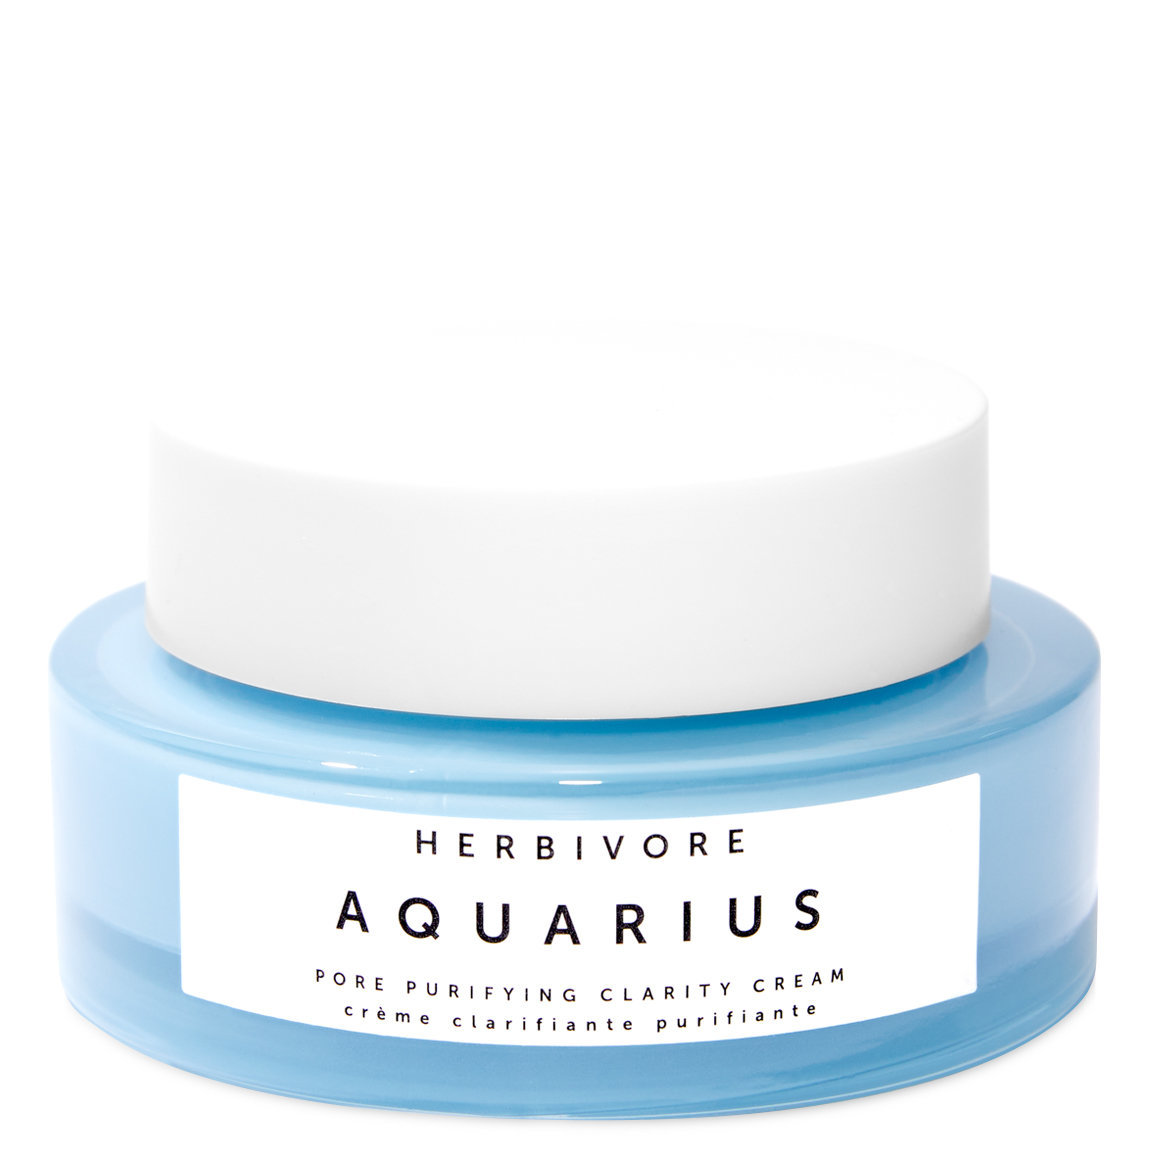 Herbivore Aquarius Pore Purifying Clarity Cream alternative view 1 - product swatch.